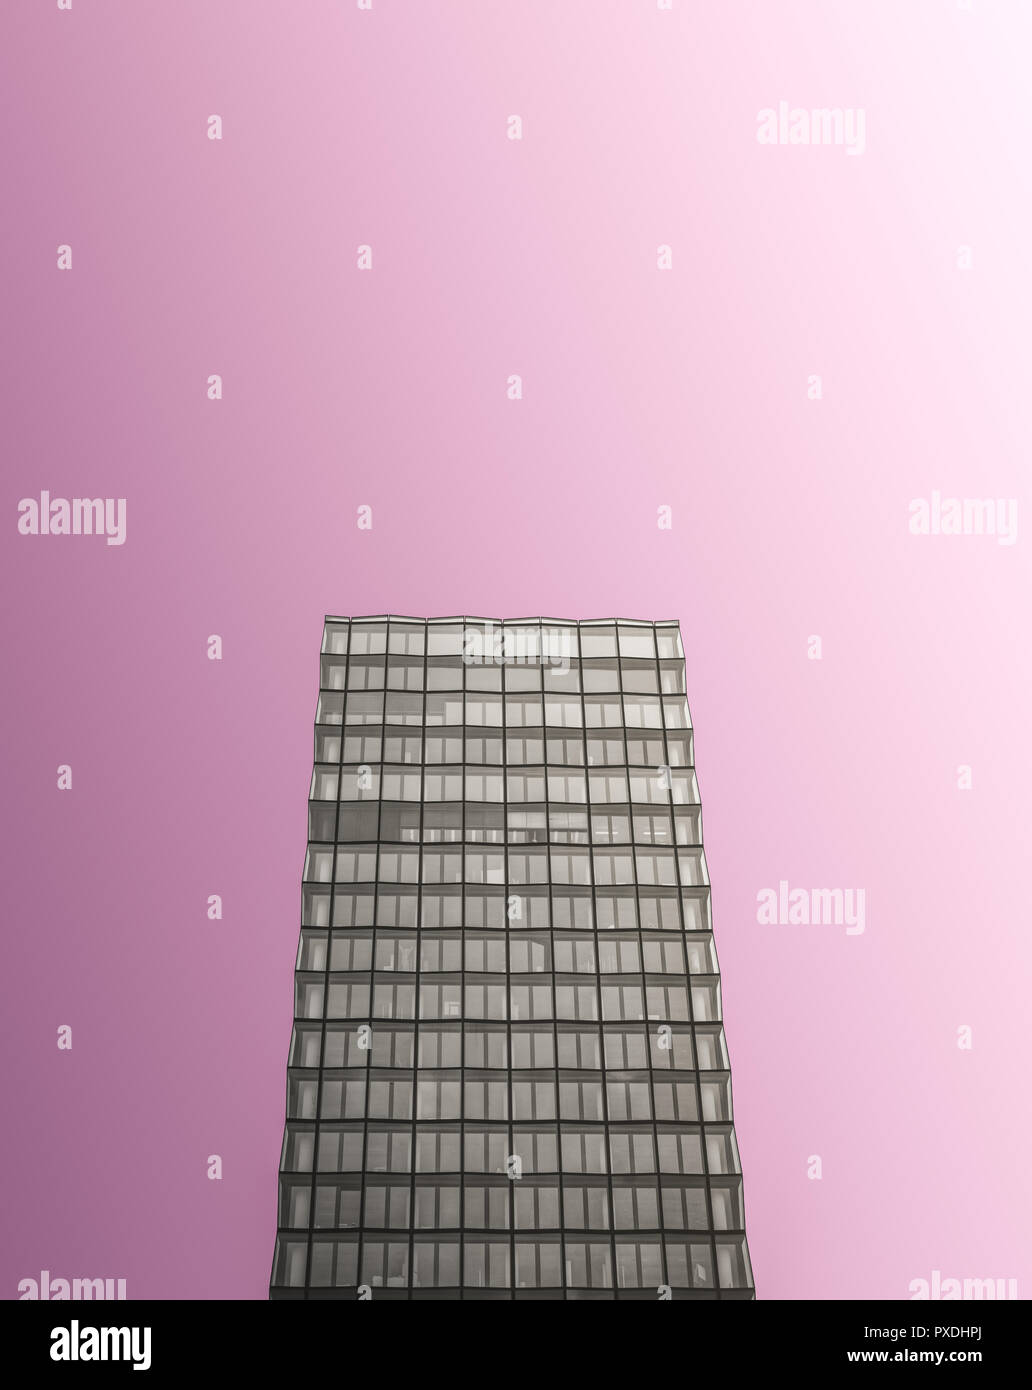 Blanco y Negro rascacielos moderno diseño en color rosa, con espacio de copia Foto de stock